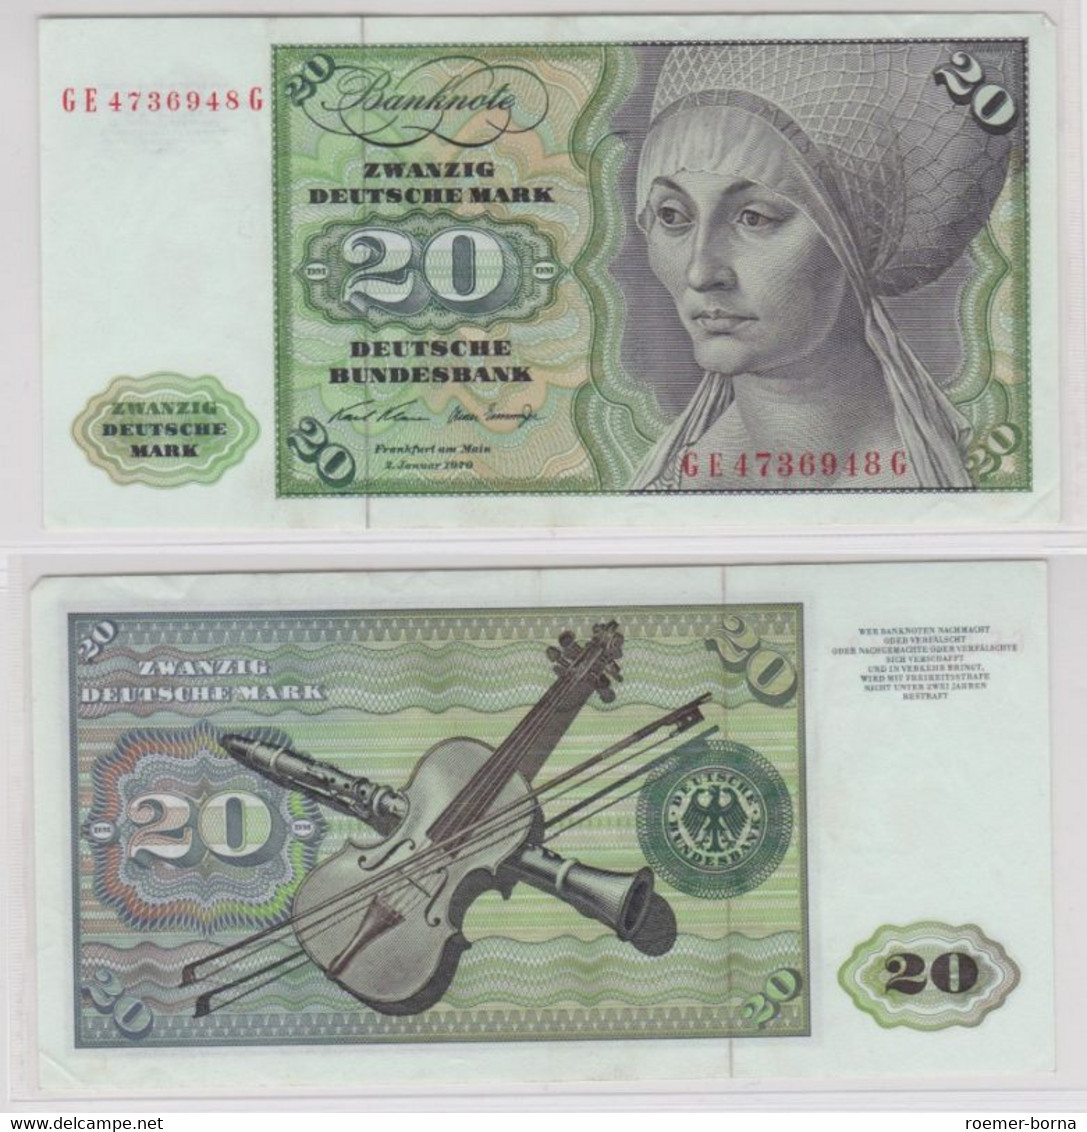 T145544 Banknote 20 DM Deutsche Mark Ro. 271b Schein 2.Jan. 1970 KN GE 4736948 G - 20 DM